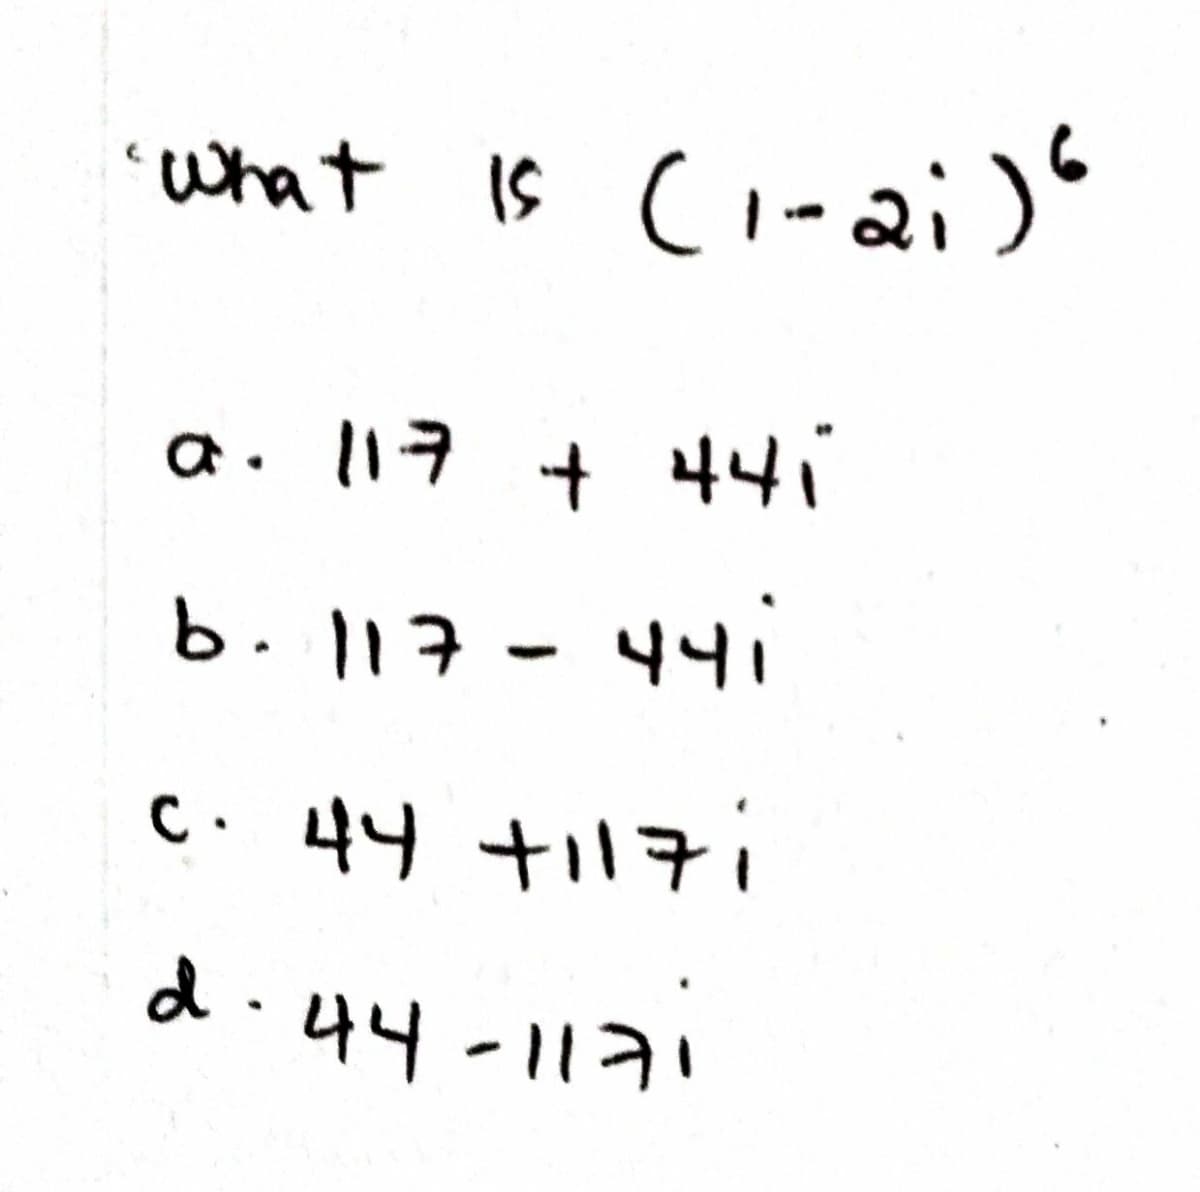 'what Is ci-ai)
a. l17 + 44
b.117-44i
C.44 +子i
d.44-117
